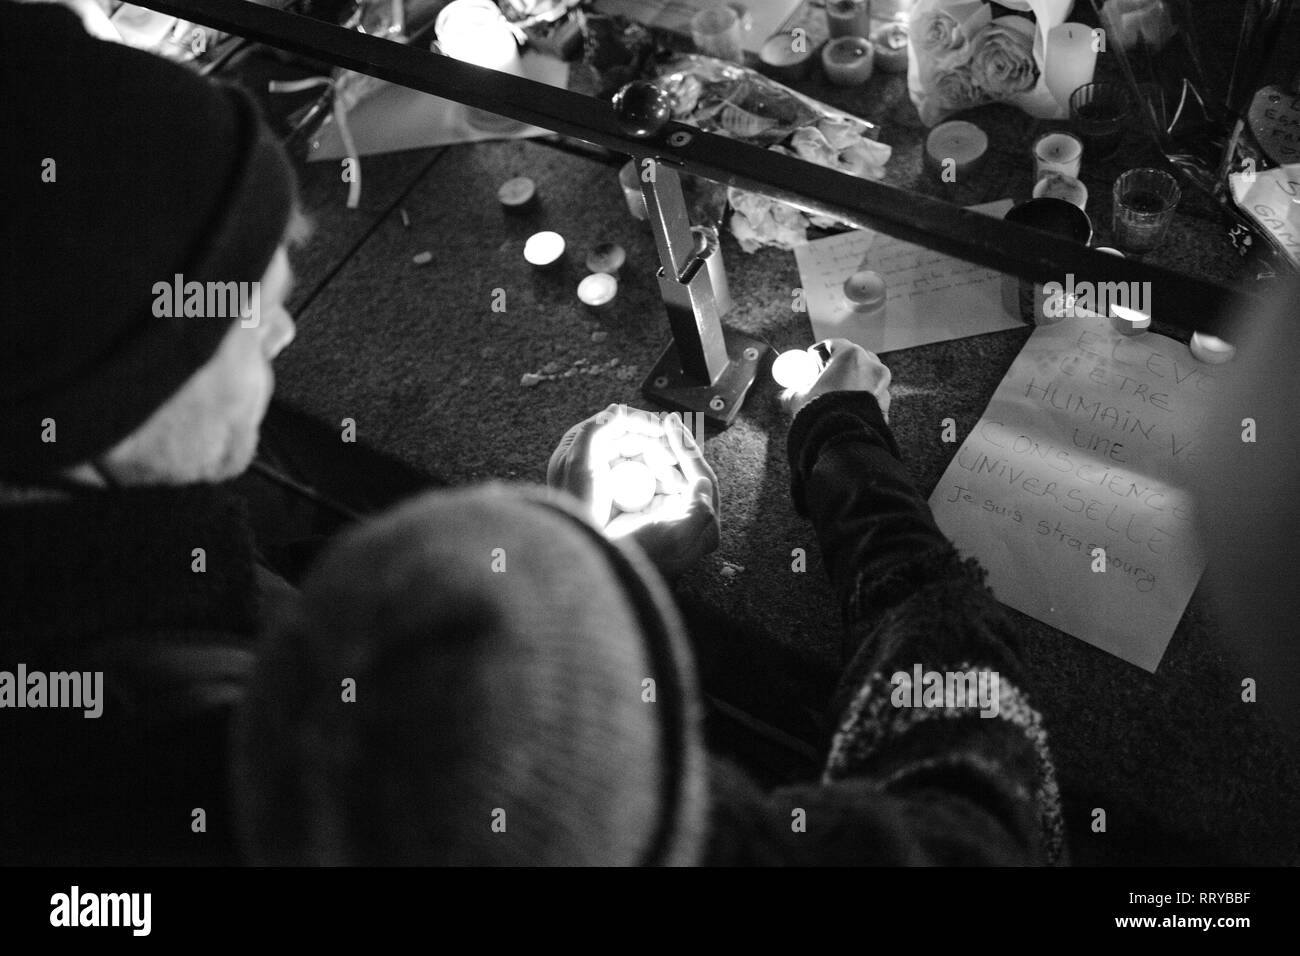 Strasburgo, Francia - Dic 13, 2018: uomo candela di protezione dal vento a veglia con più luce di candele fiori e messaggi per le vittime degli attentati Cherif Chekatt al mercatino di Natale Foto Stock